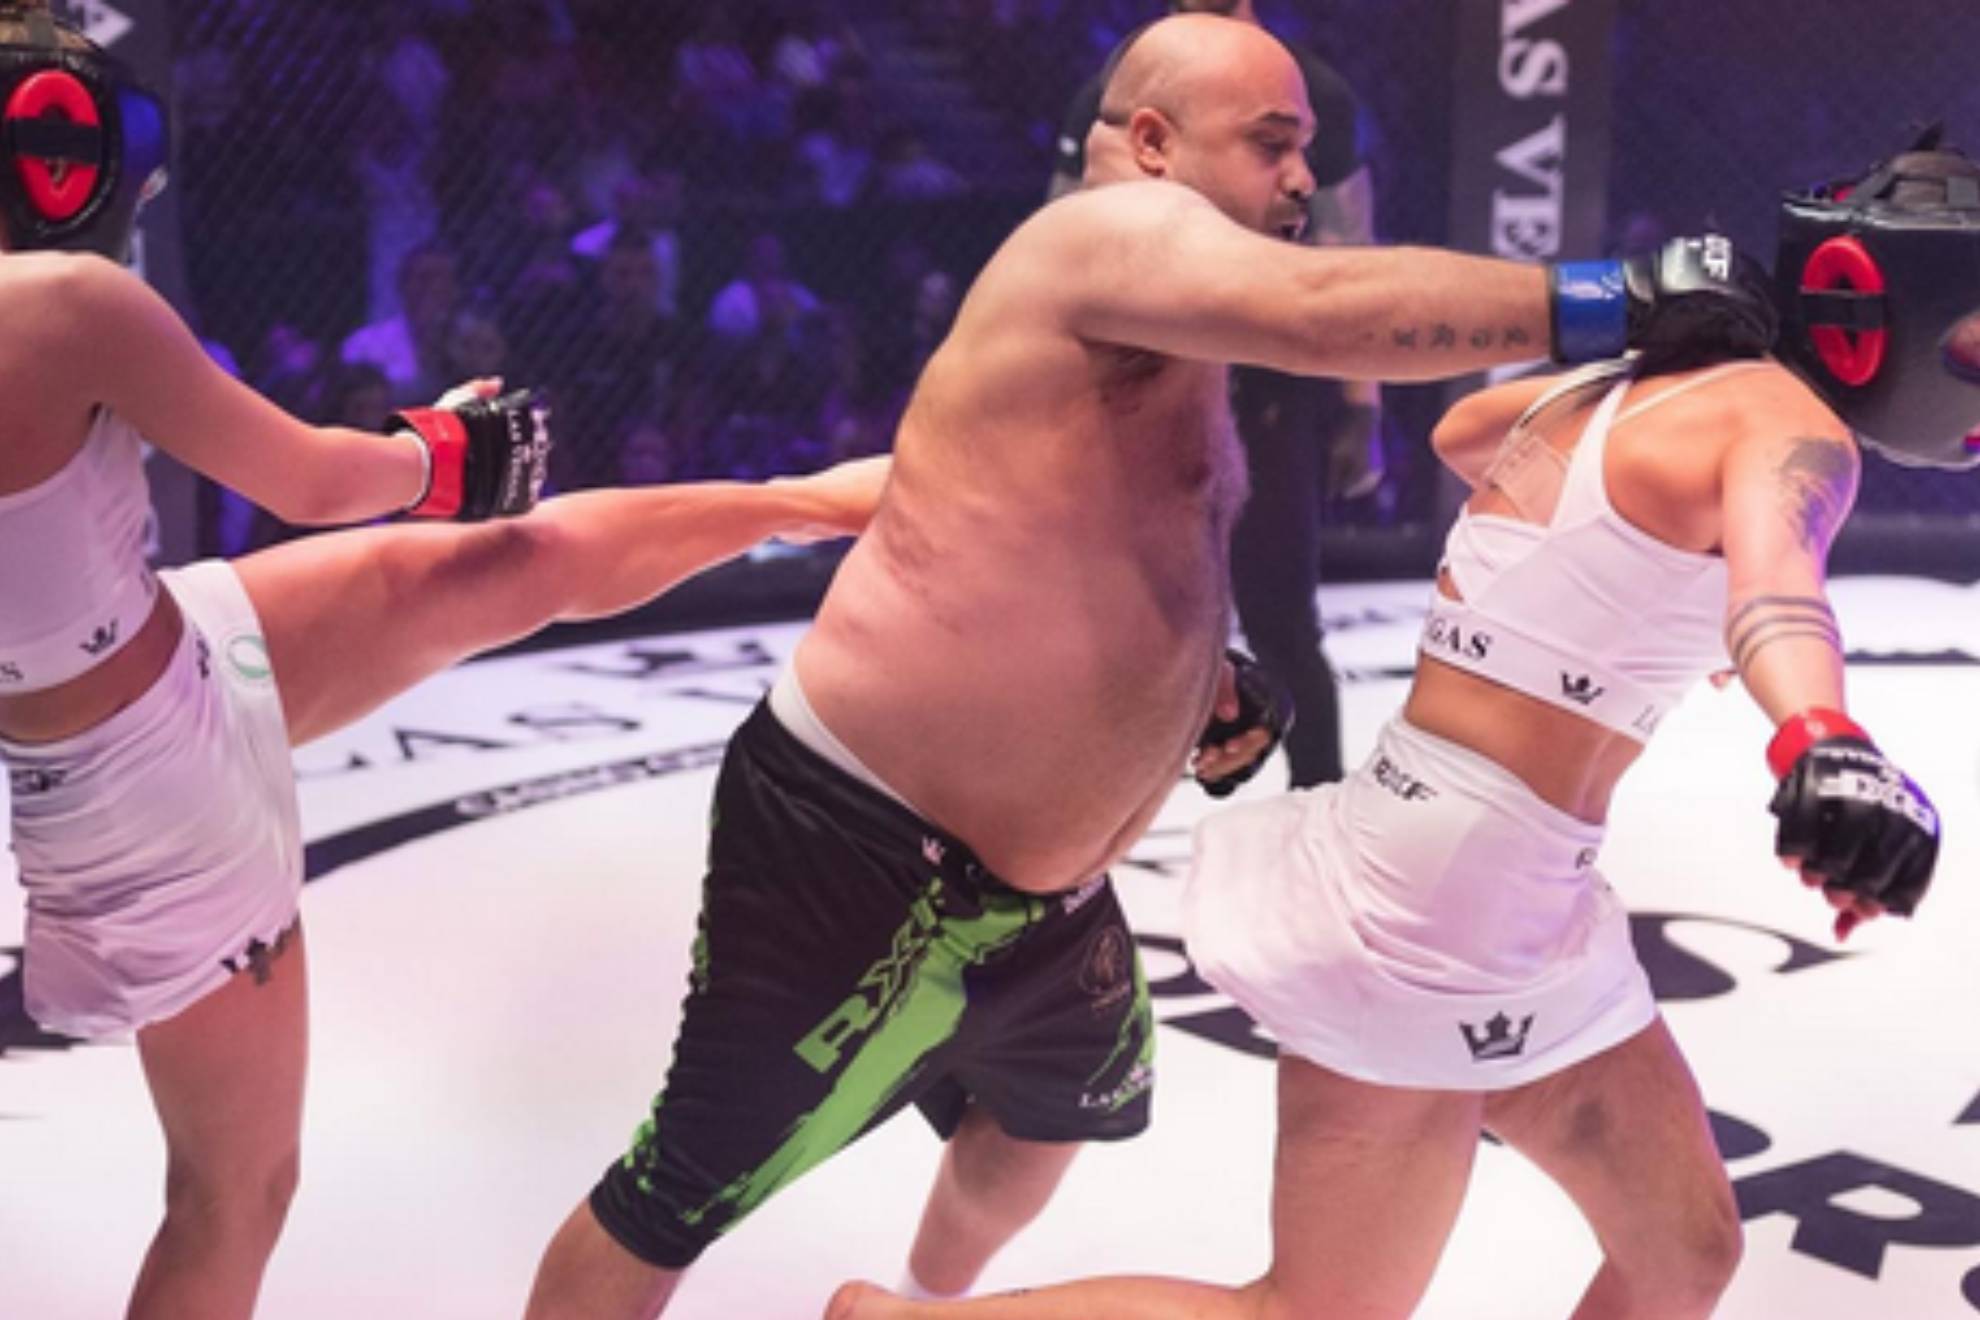 Dos mujeres y un hombre se enfrentaron en un polémico combate de MMA (Artes Marciales Mixtas) que se ha disputado en Rumanía en la gala Gala RXF 46.